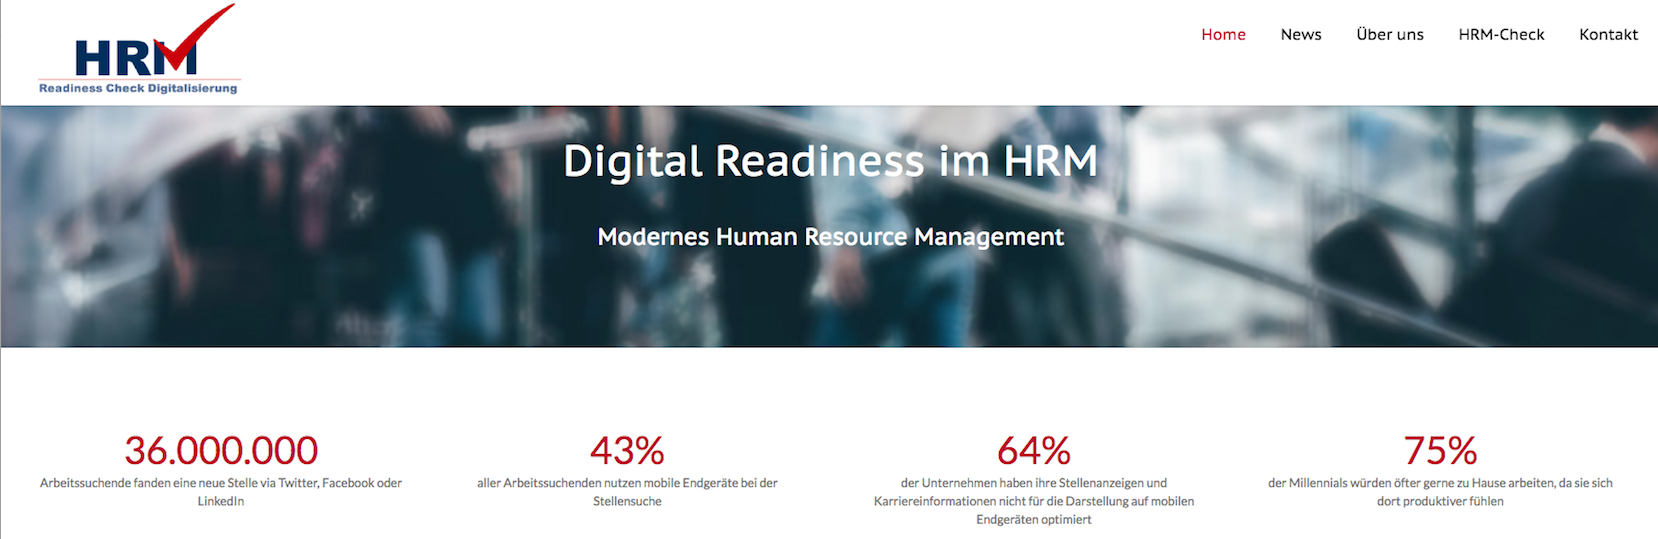 HR-Strategien für die Digitalisierung der Arbeitswelt –  Fink & Fuchs und ITA kooperieren